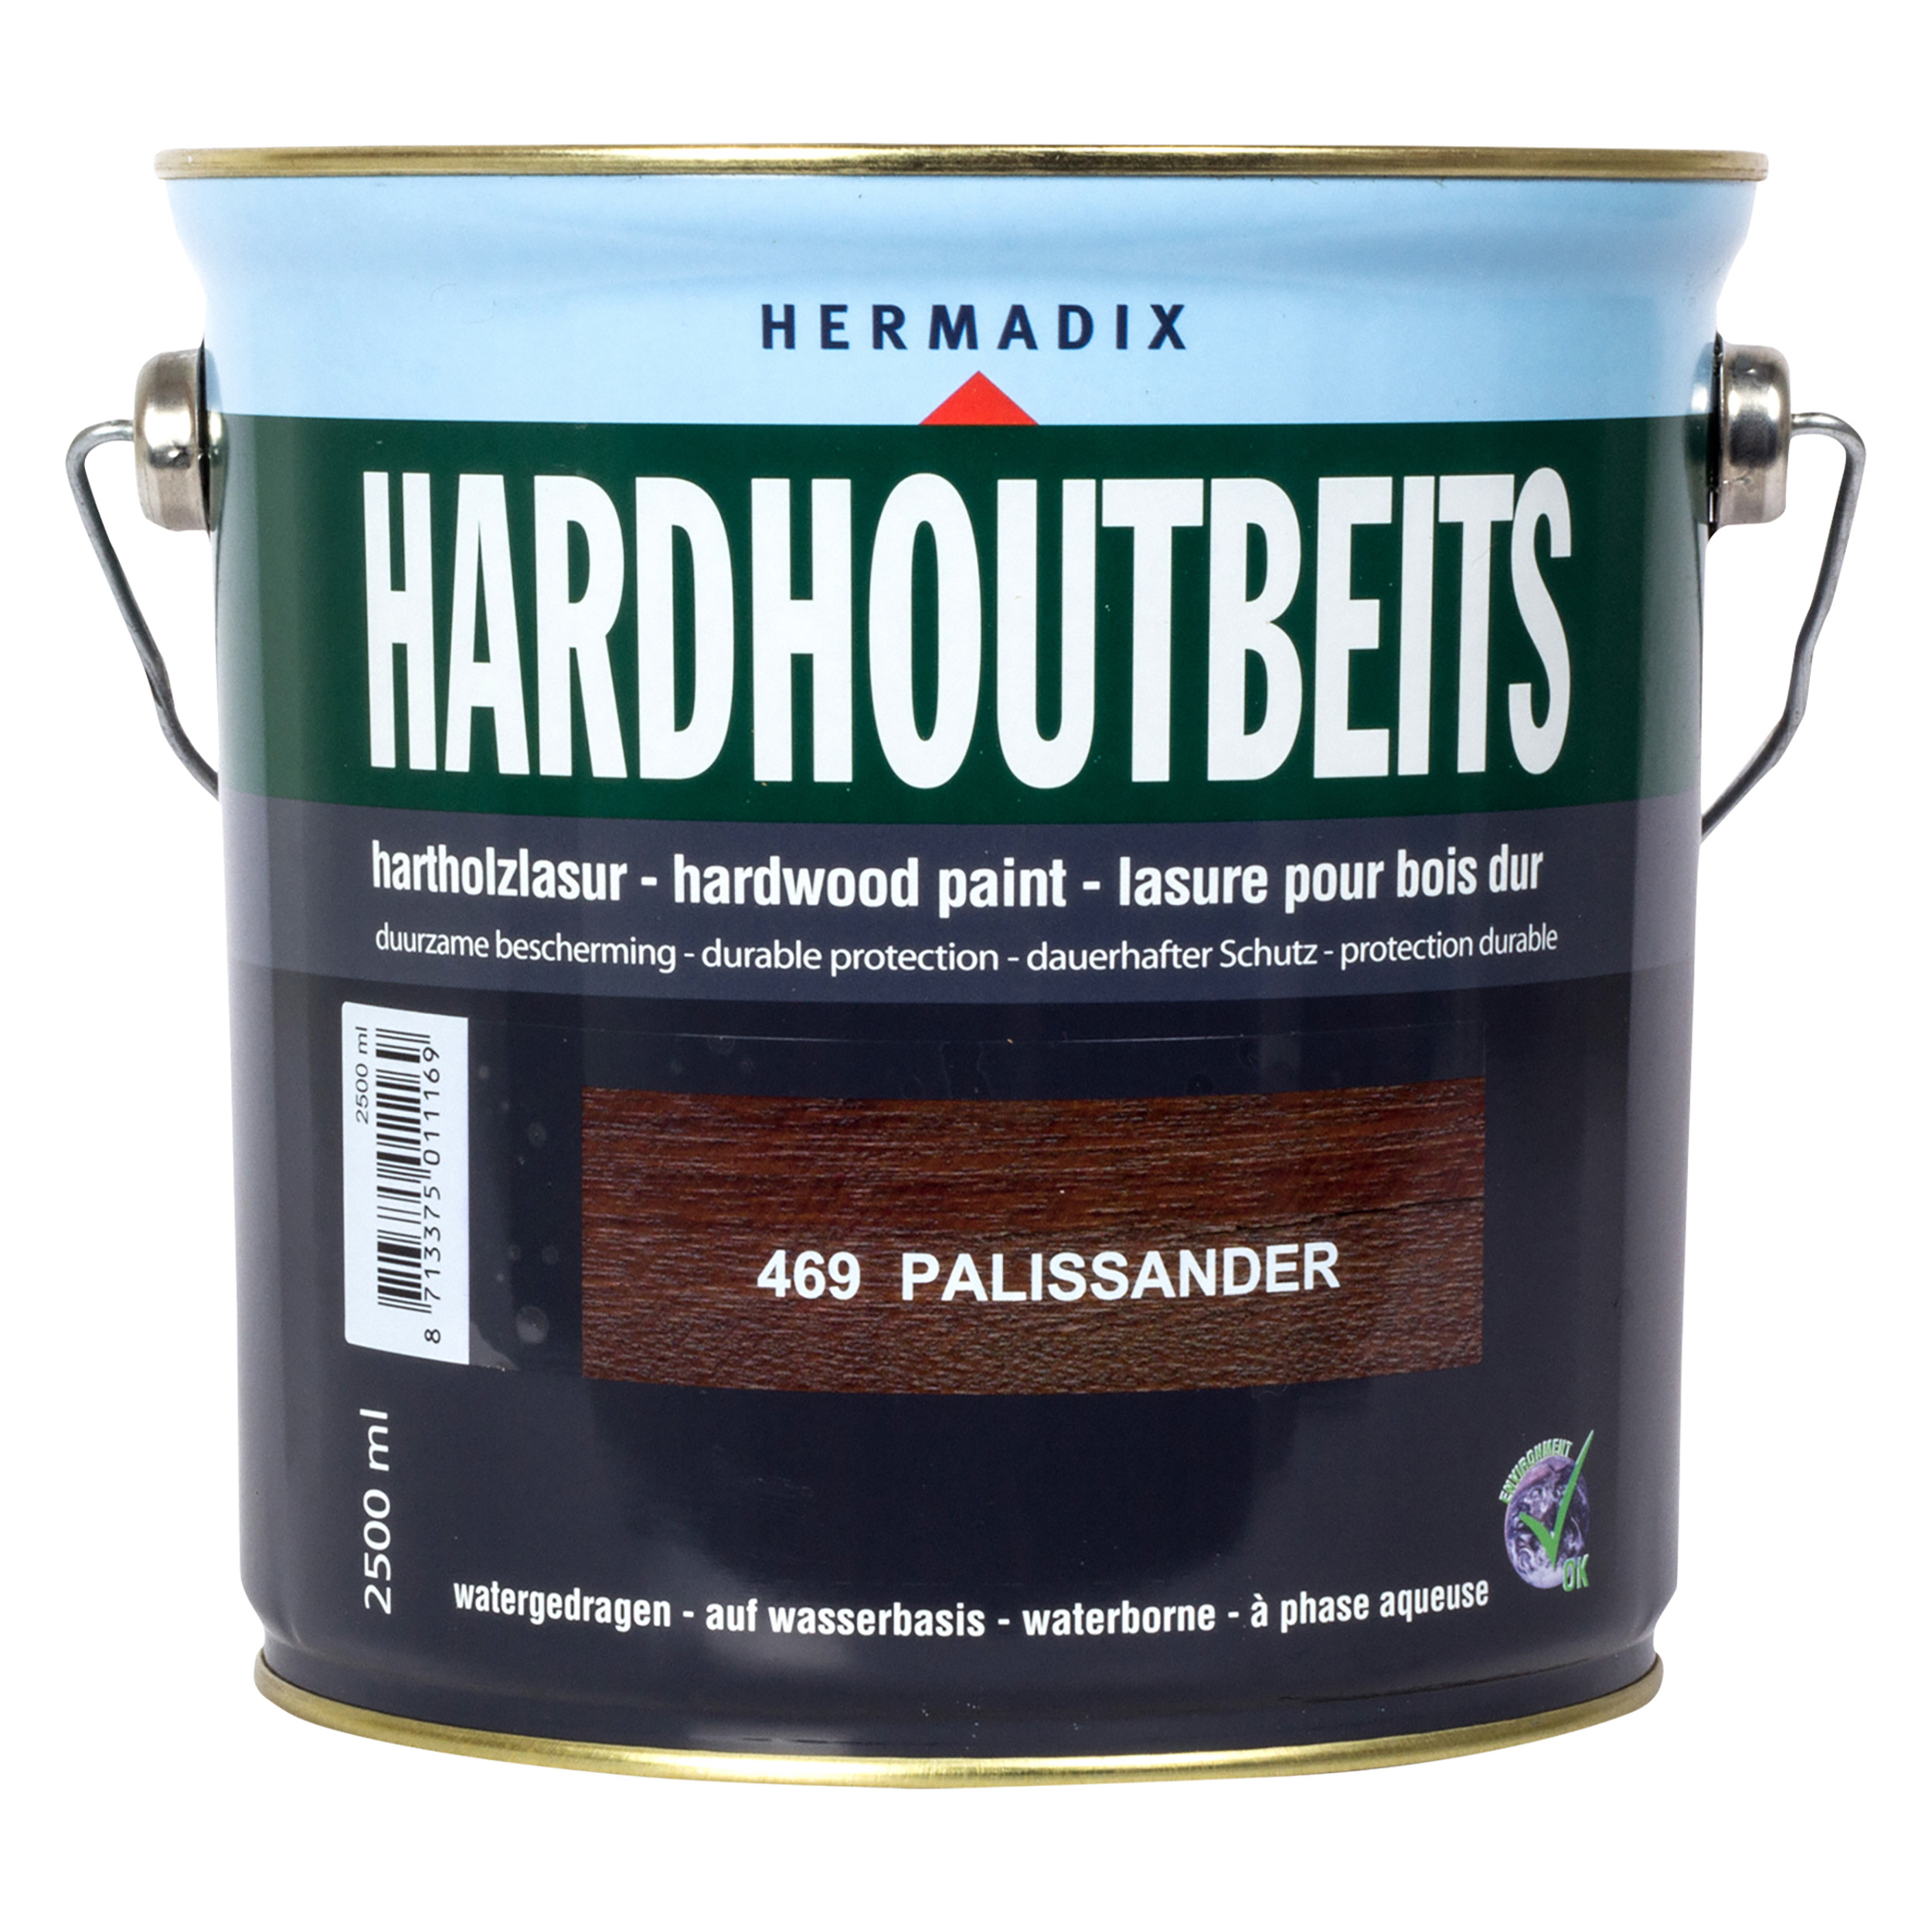 25.846.92 Hermadix  hardhoutbeits zijdeglans - 2500 ml - palissander (469)